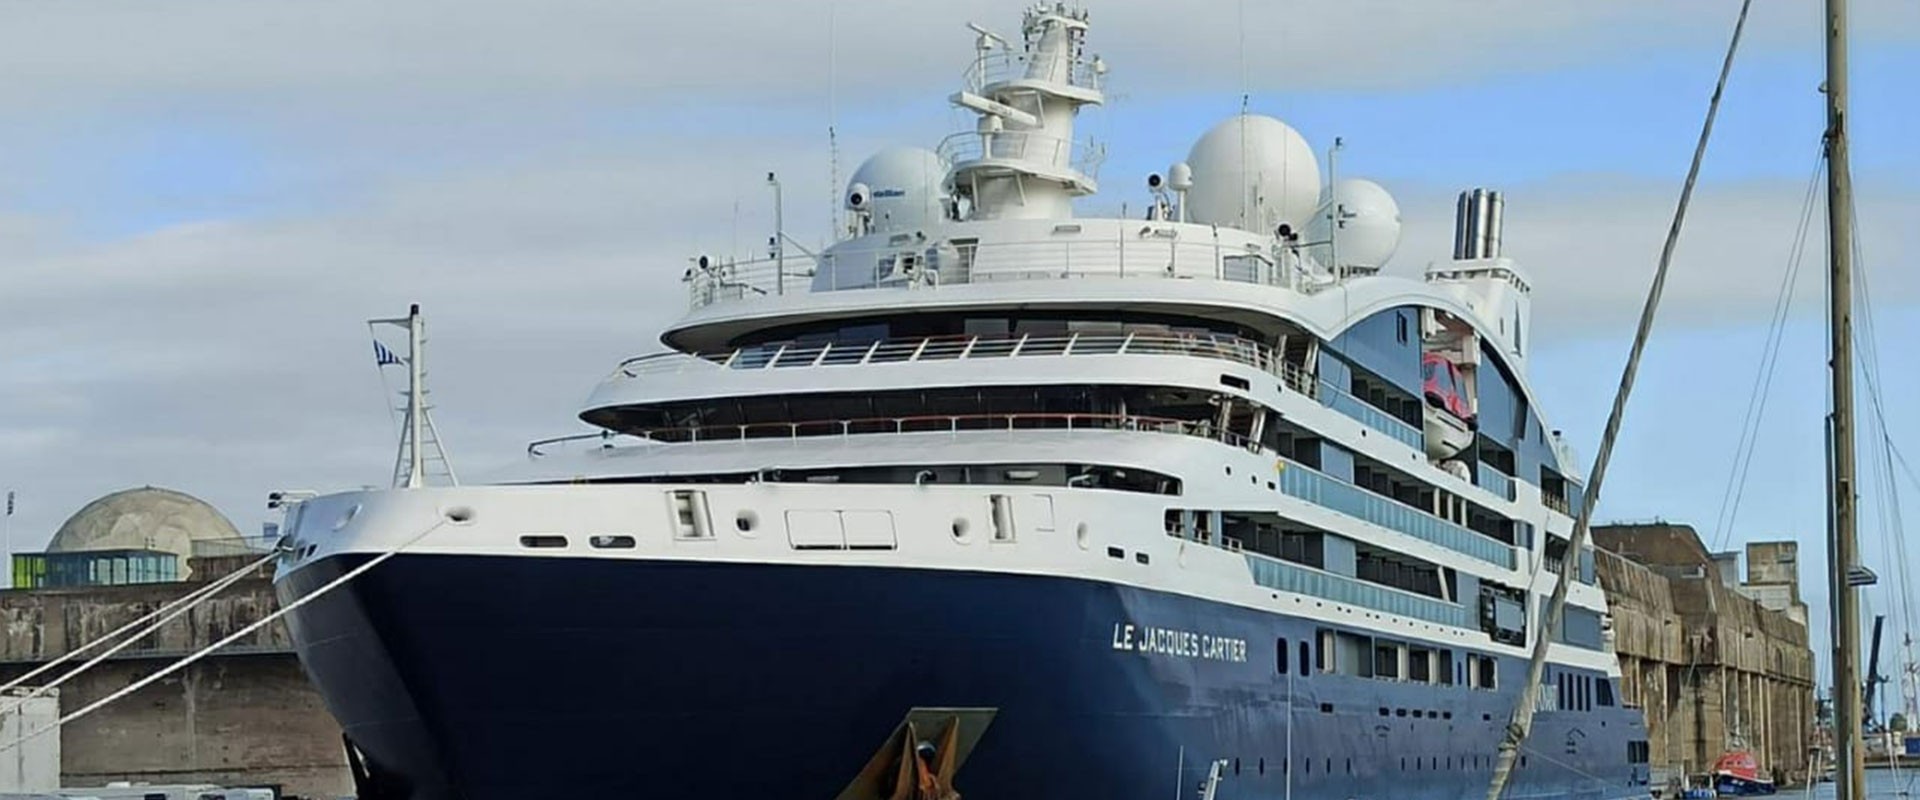 The PONANT Cruise Ship Le Jacques Cartier Calls at Saint Nazaire